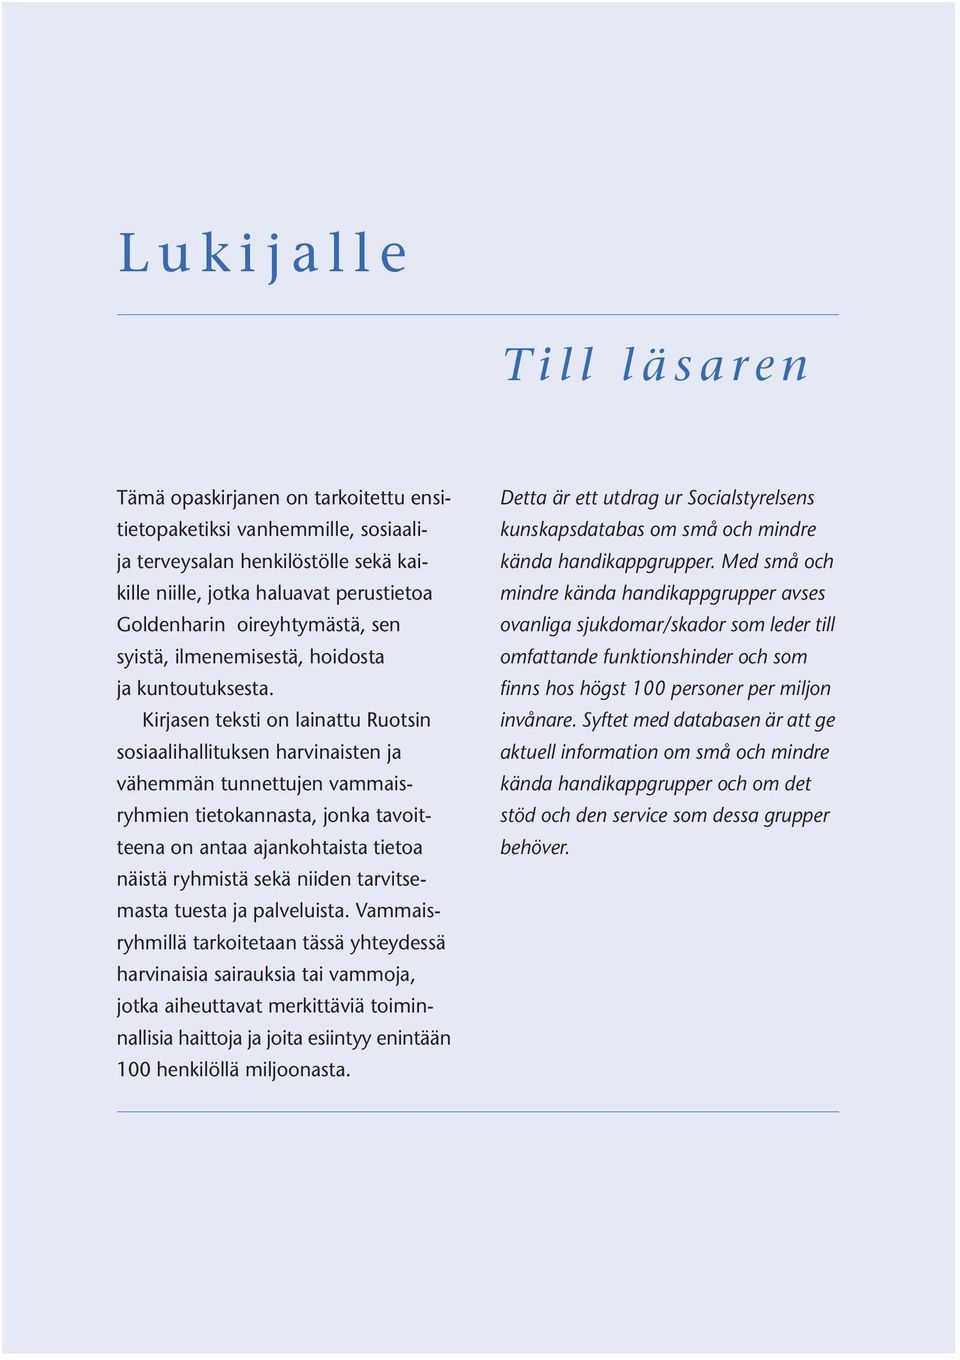 Kirjasen teksti on lainattu Ruotsin sosiaalihallituksen harvinaisten ja vähemmän tunnettujen vammaisryhmien tietokannasta, jonka tavoitteena on antaa ajankohtaista tietoa näistä ryhmistä sekä niiden